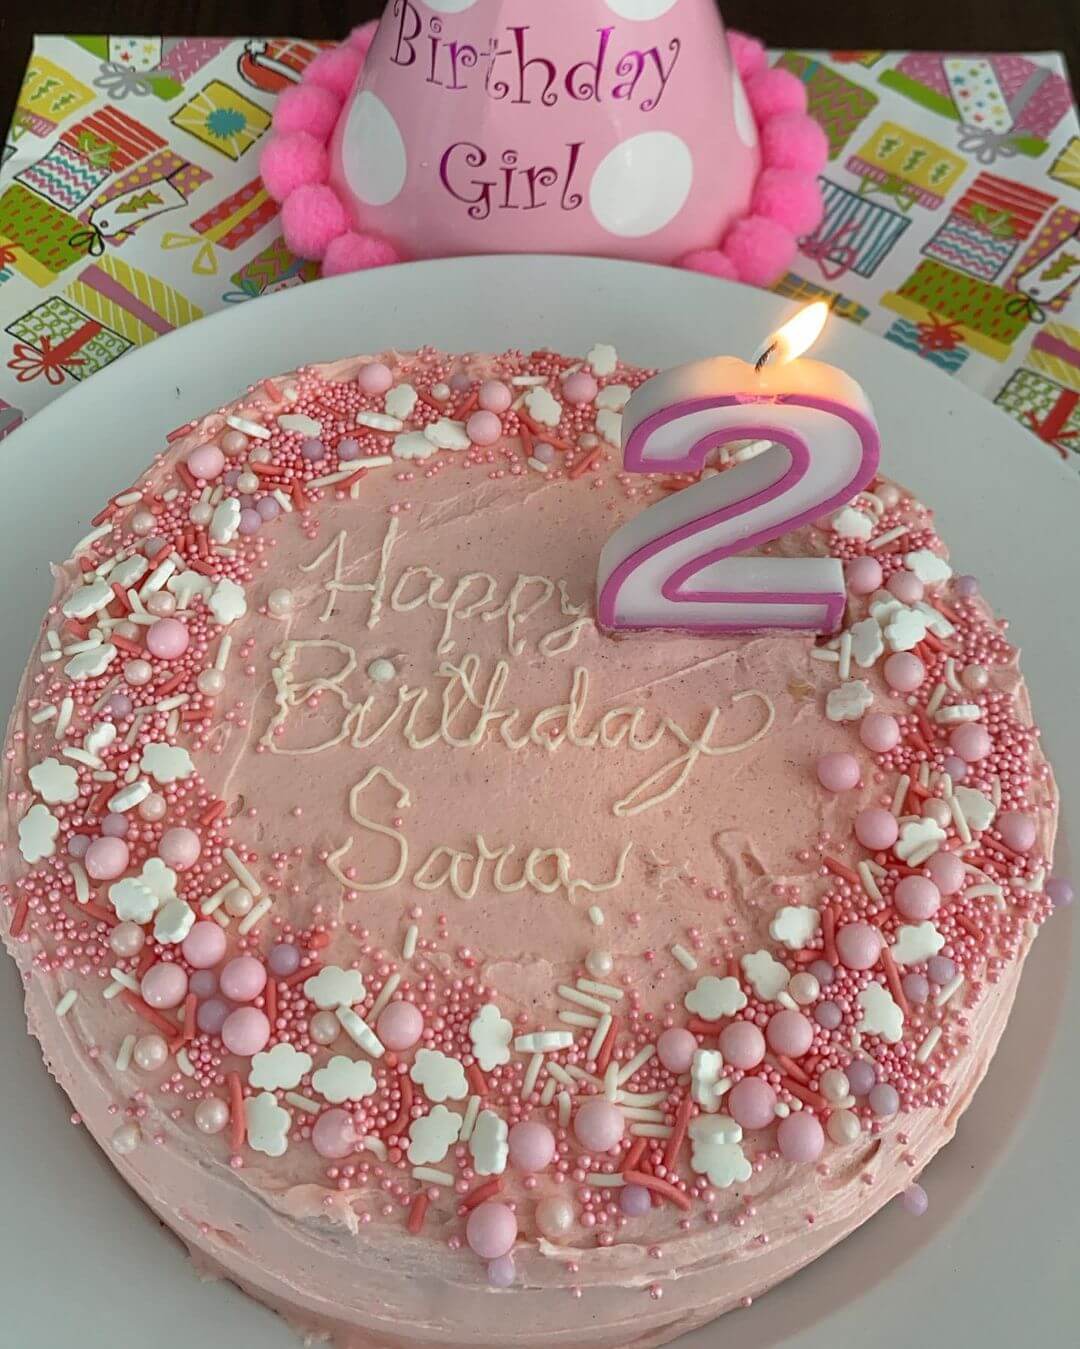 在囡囡生日時，婷婷曾親自製作蛋糕。